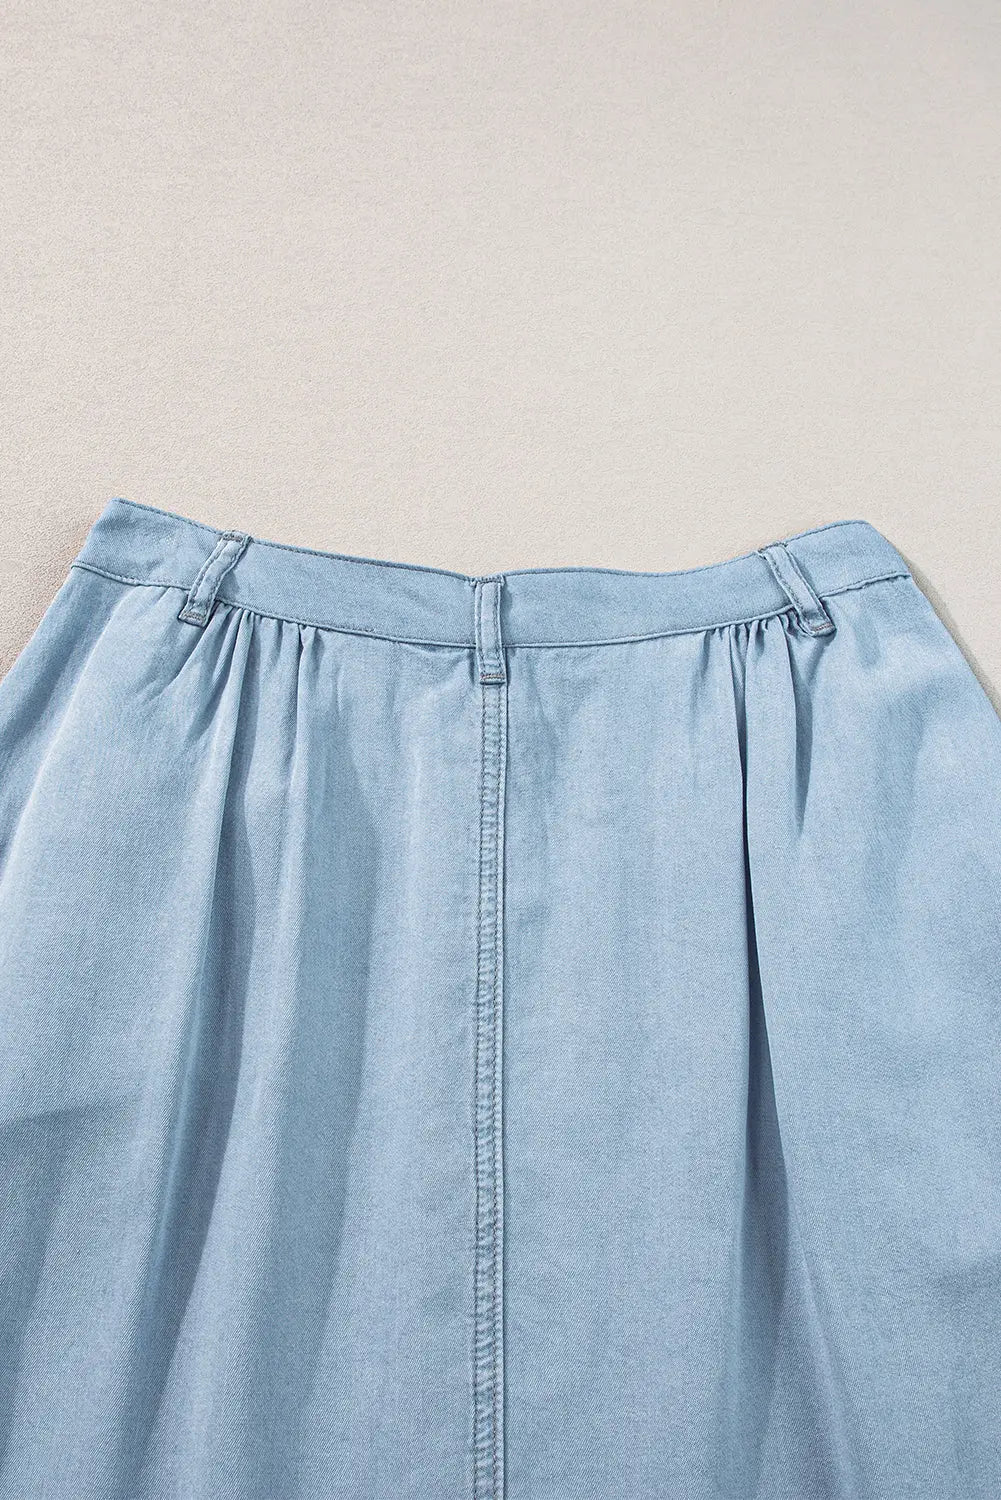 Mist Blue Fully Buttoned Long Denim Skirt - Scarlett's Riverside Boutique